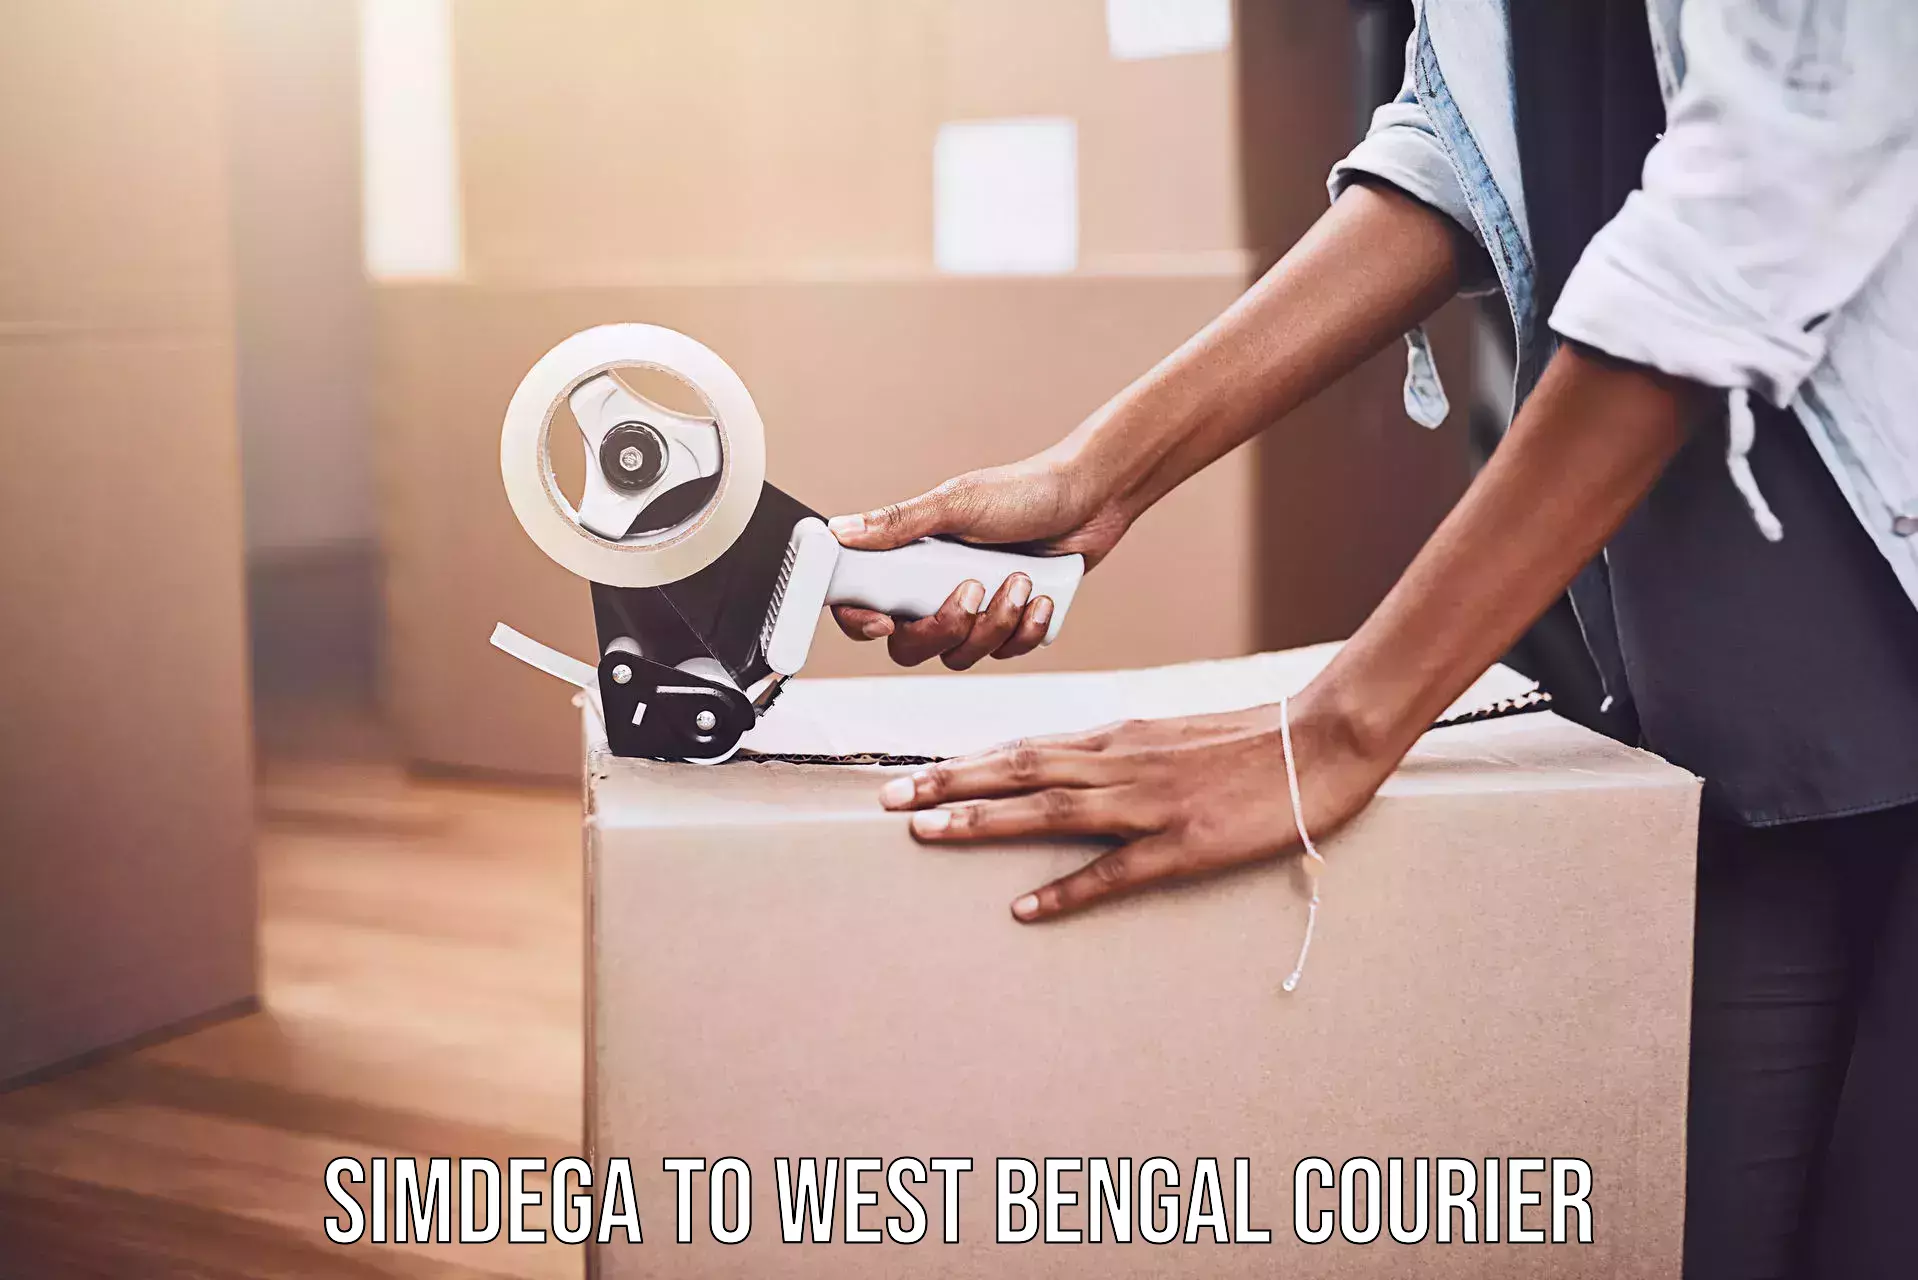 Urgent courier needs Simdega to Jaigaon